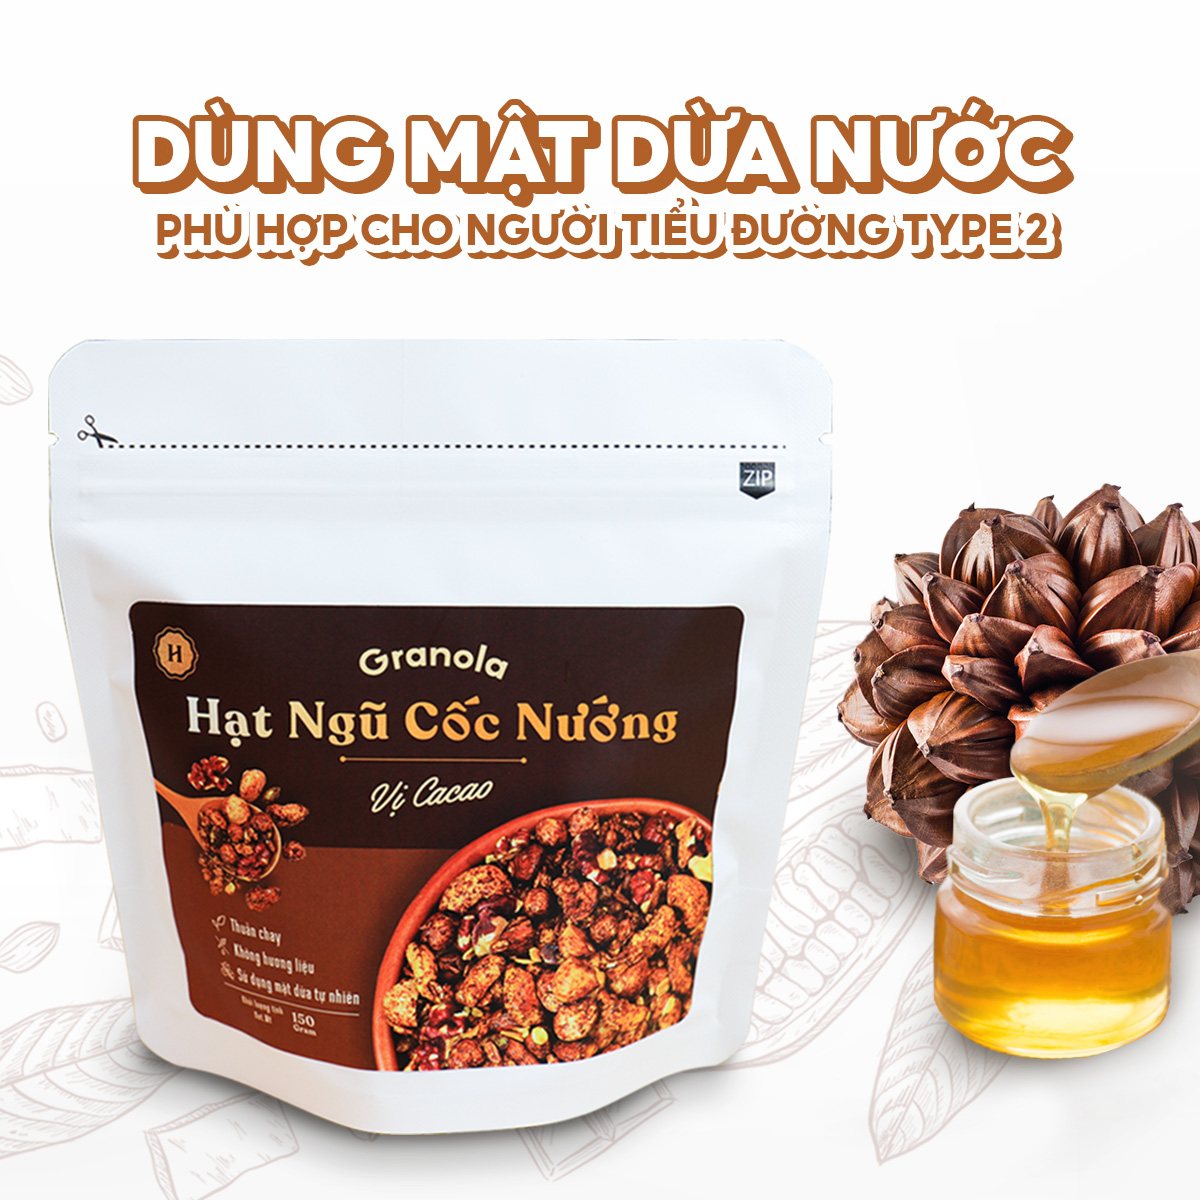 Granola nướng mật dừa giòn tan, 8 loại hạt ngũ cốc giảm cân, 0 trái cây sấy, GI thấp - Túi 80g/150g/400g - Heyday Cacao